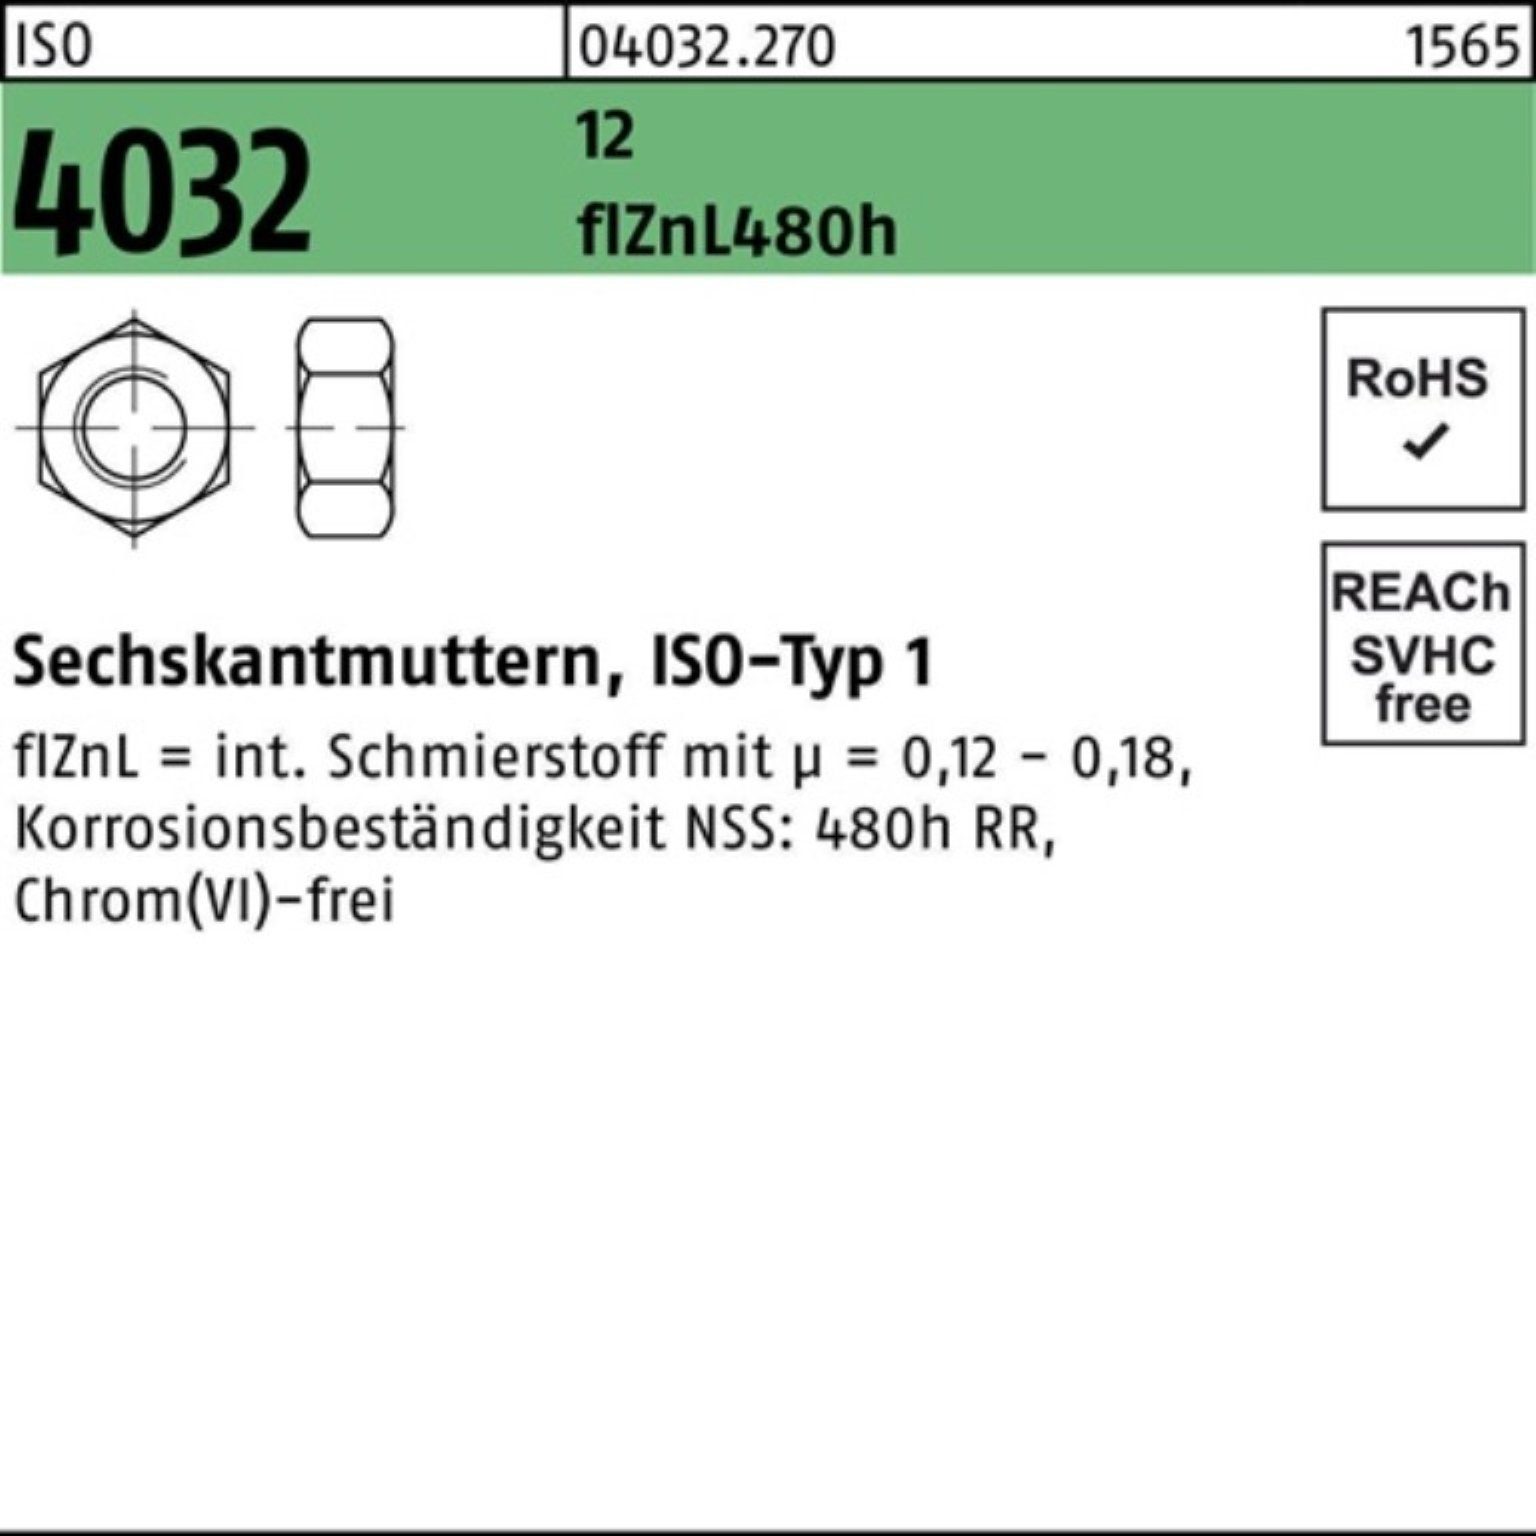 Bufab Muttern 100er M10 480h 12 4032 flZnL zinklamellenb. Sechskantmutter Pack 1 ISO